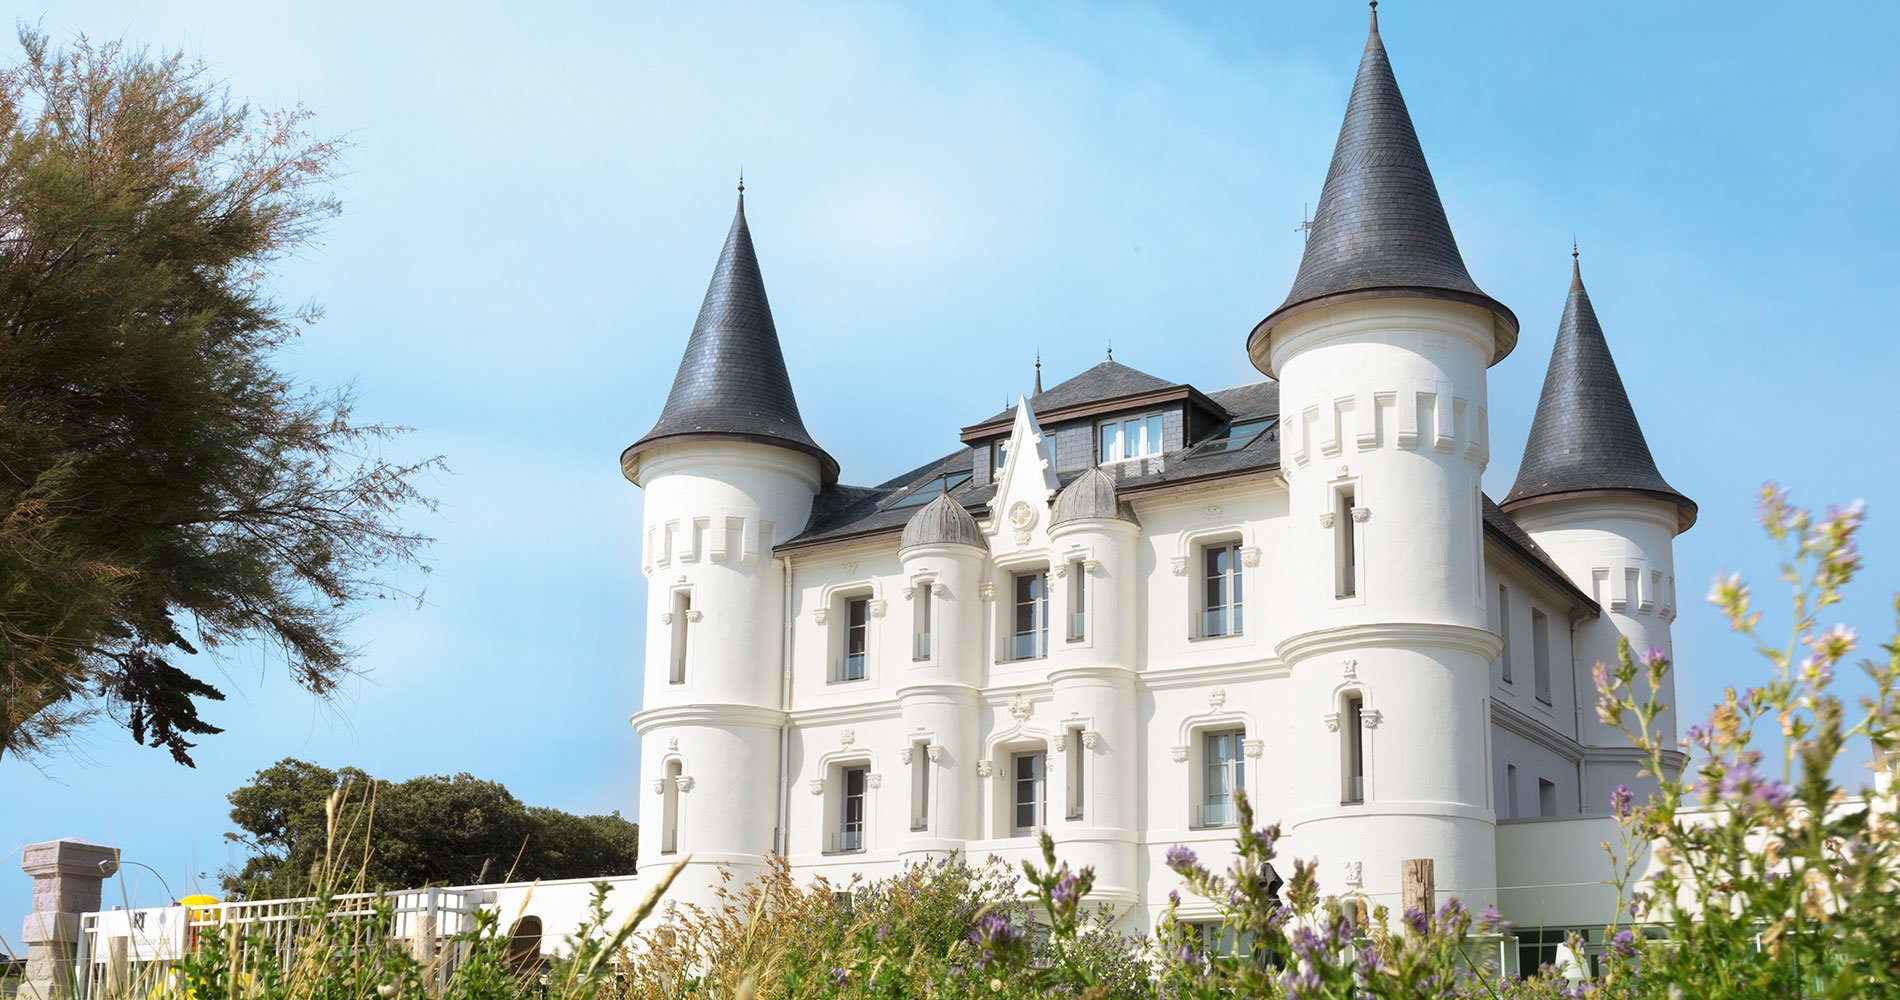 luxury hotel Château des Tourelles Hôtel 4 stars Thalasso Spa La Baule France facade